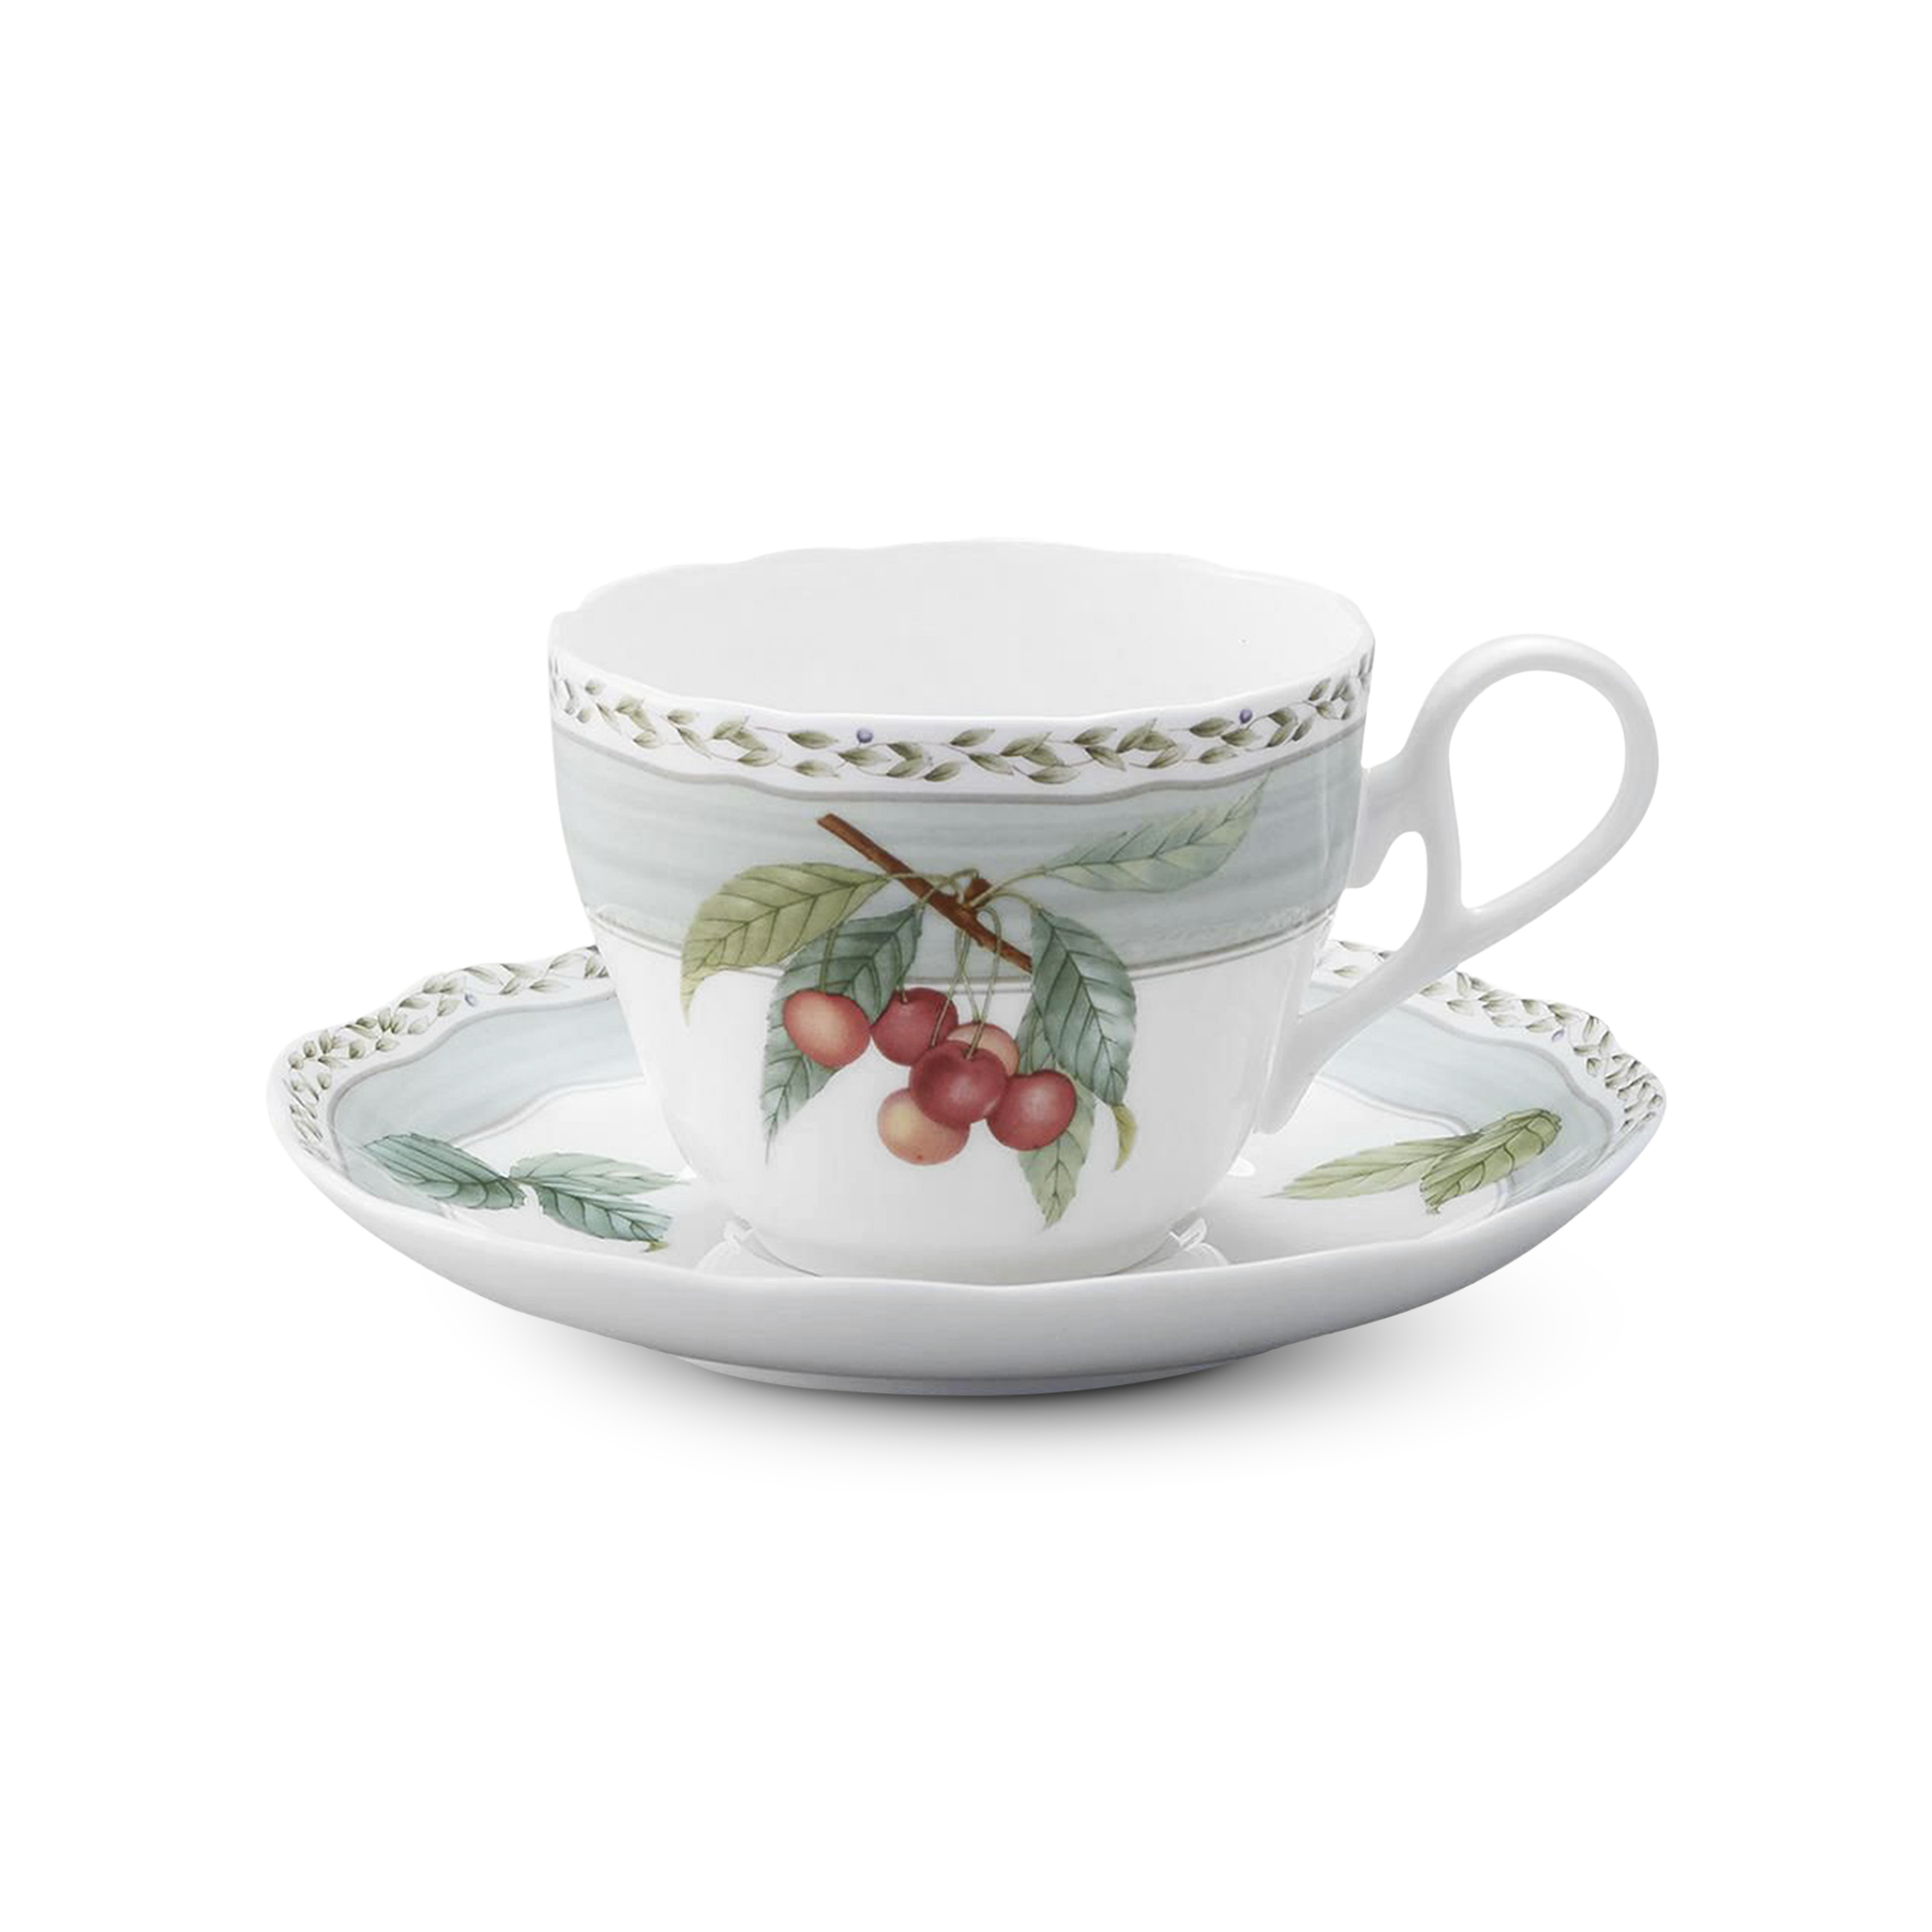  Chén trà (tách trà) kèm đĩa lót màu xanh dung tích 250ml sứ xương | Orchard Garden 4911-1L-T97887 